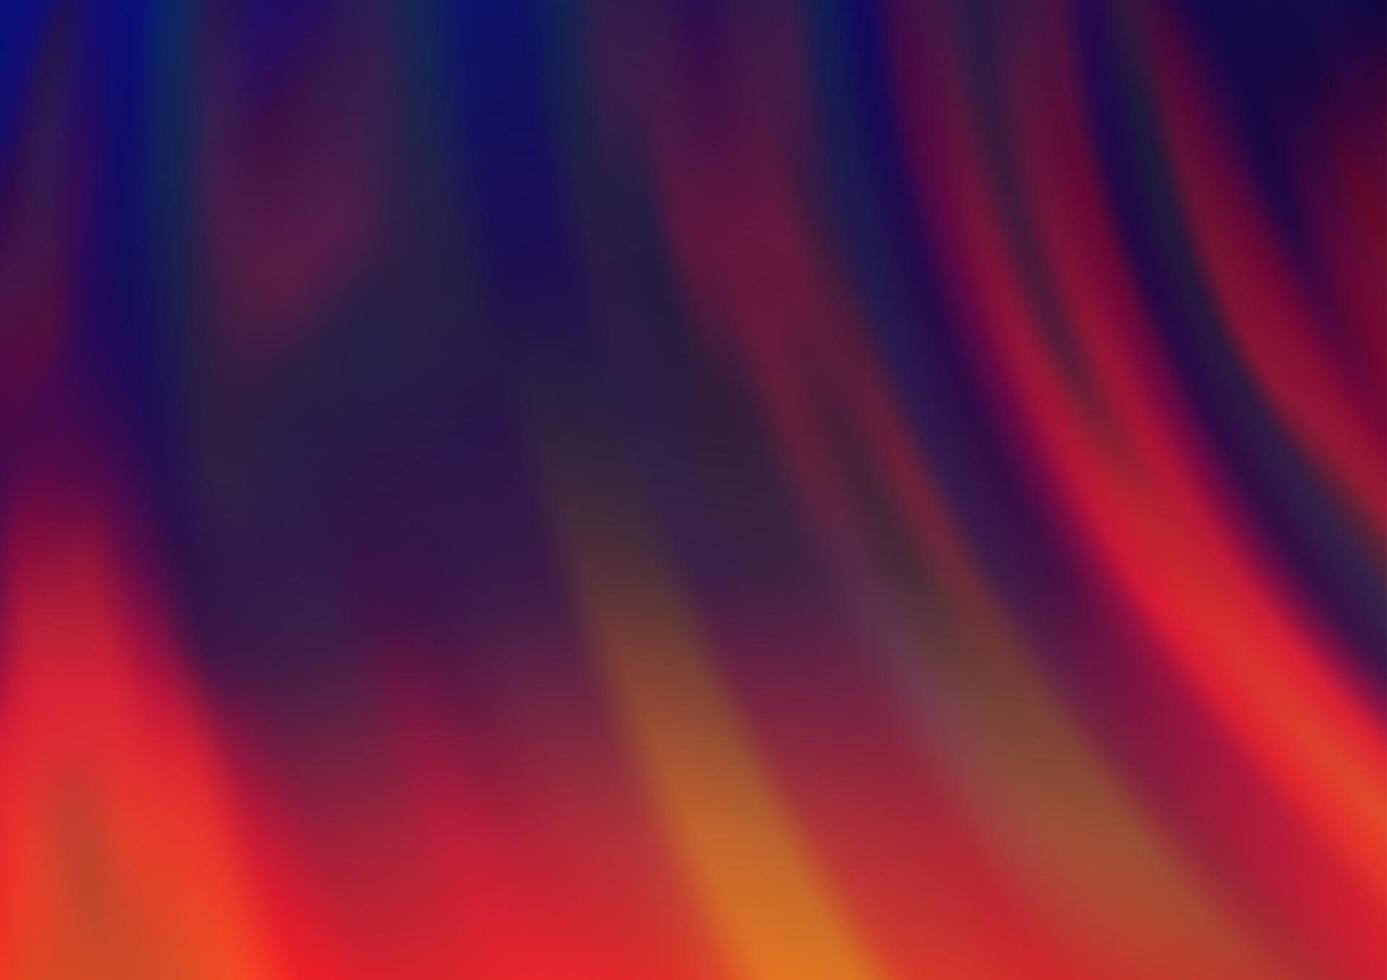 sfondo vettoriale blu scuro, rosso con forme a bolle.